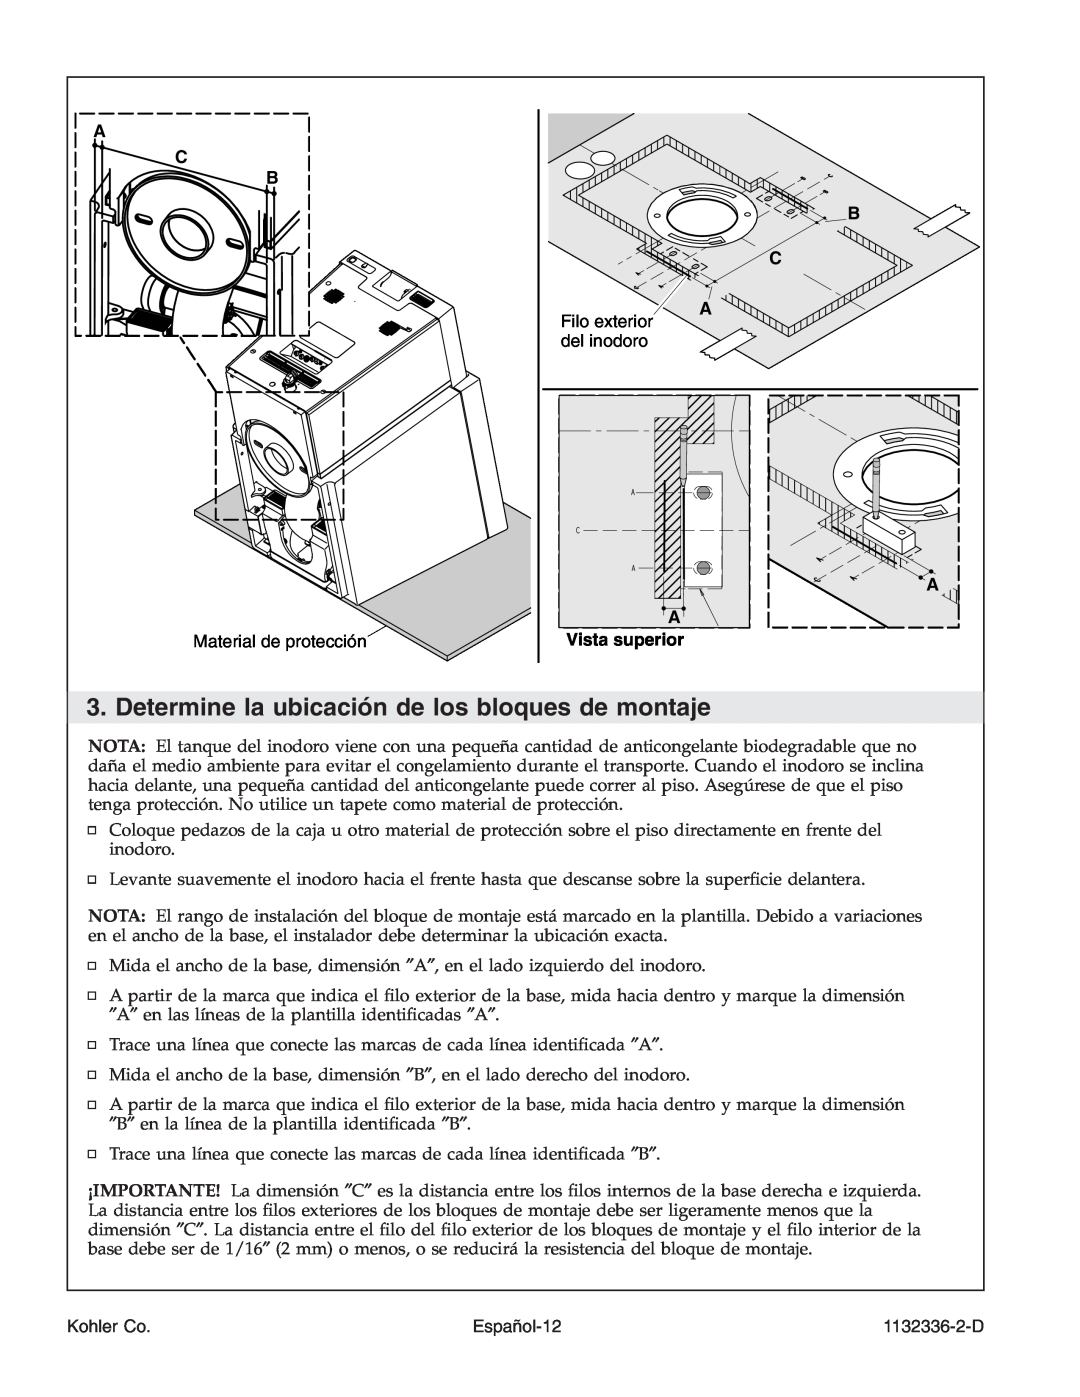 Kohler K-3900 manual A Vista superior, Español-12, A C B, Kohler Co, 1132336-2-D 